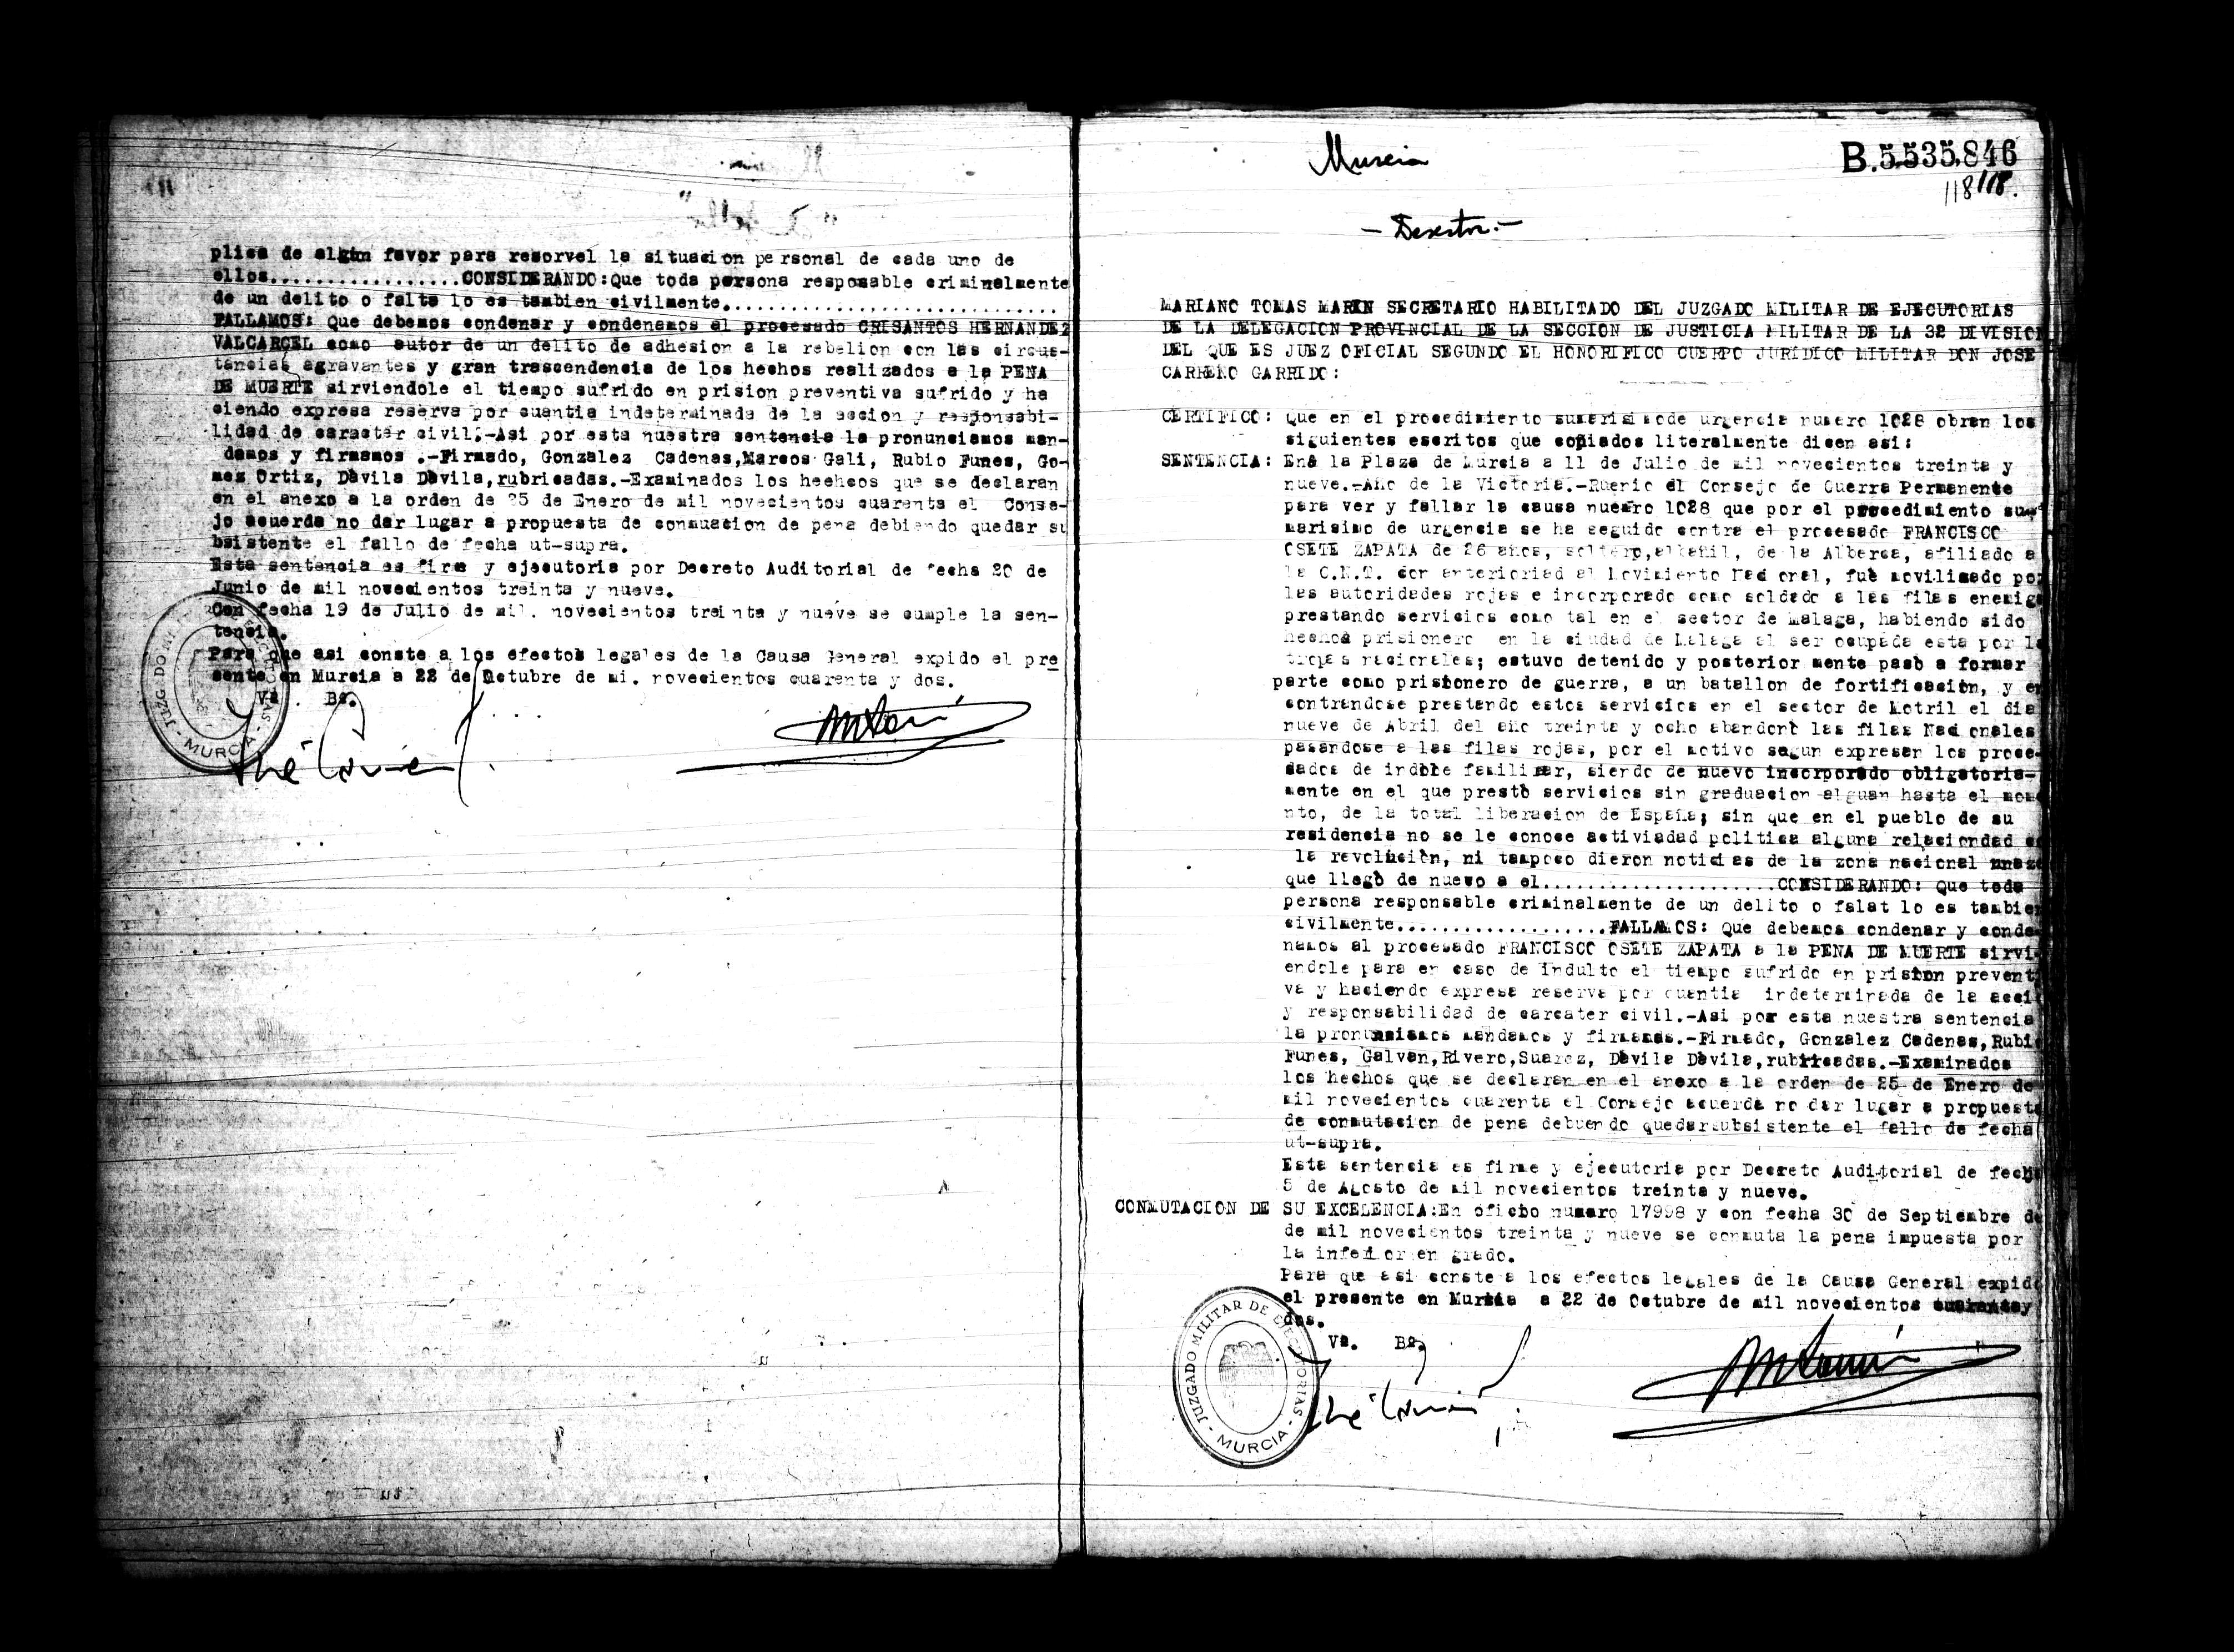 Certificado de la sentencia pronunciada contra Francisco Osete Zapata, causa 1028, el 11 de julio de 1939 en Murcia.